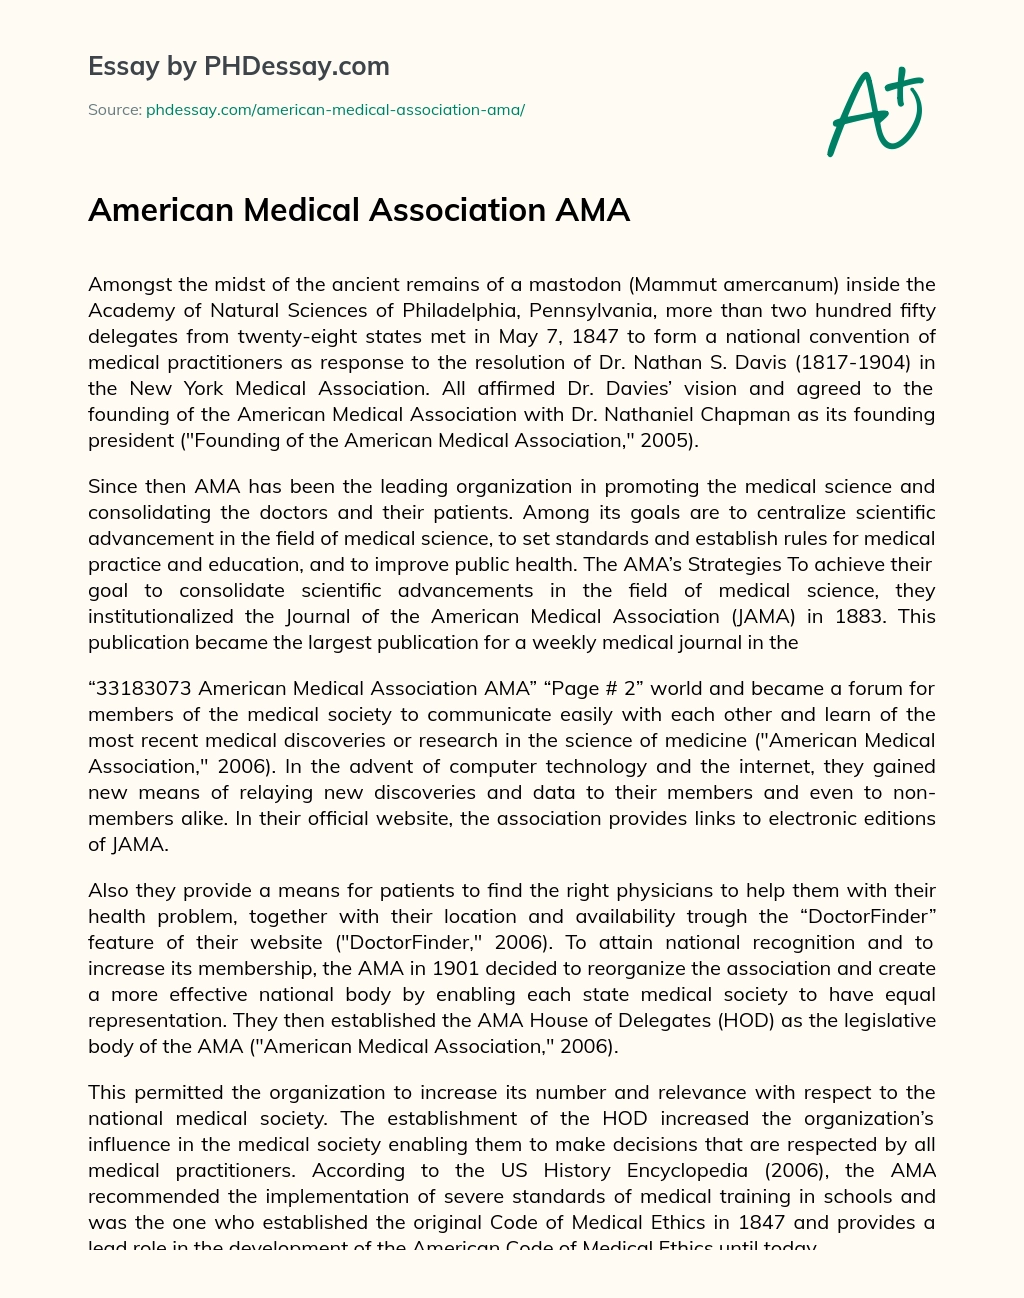 American Medical Association AMA essay